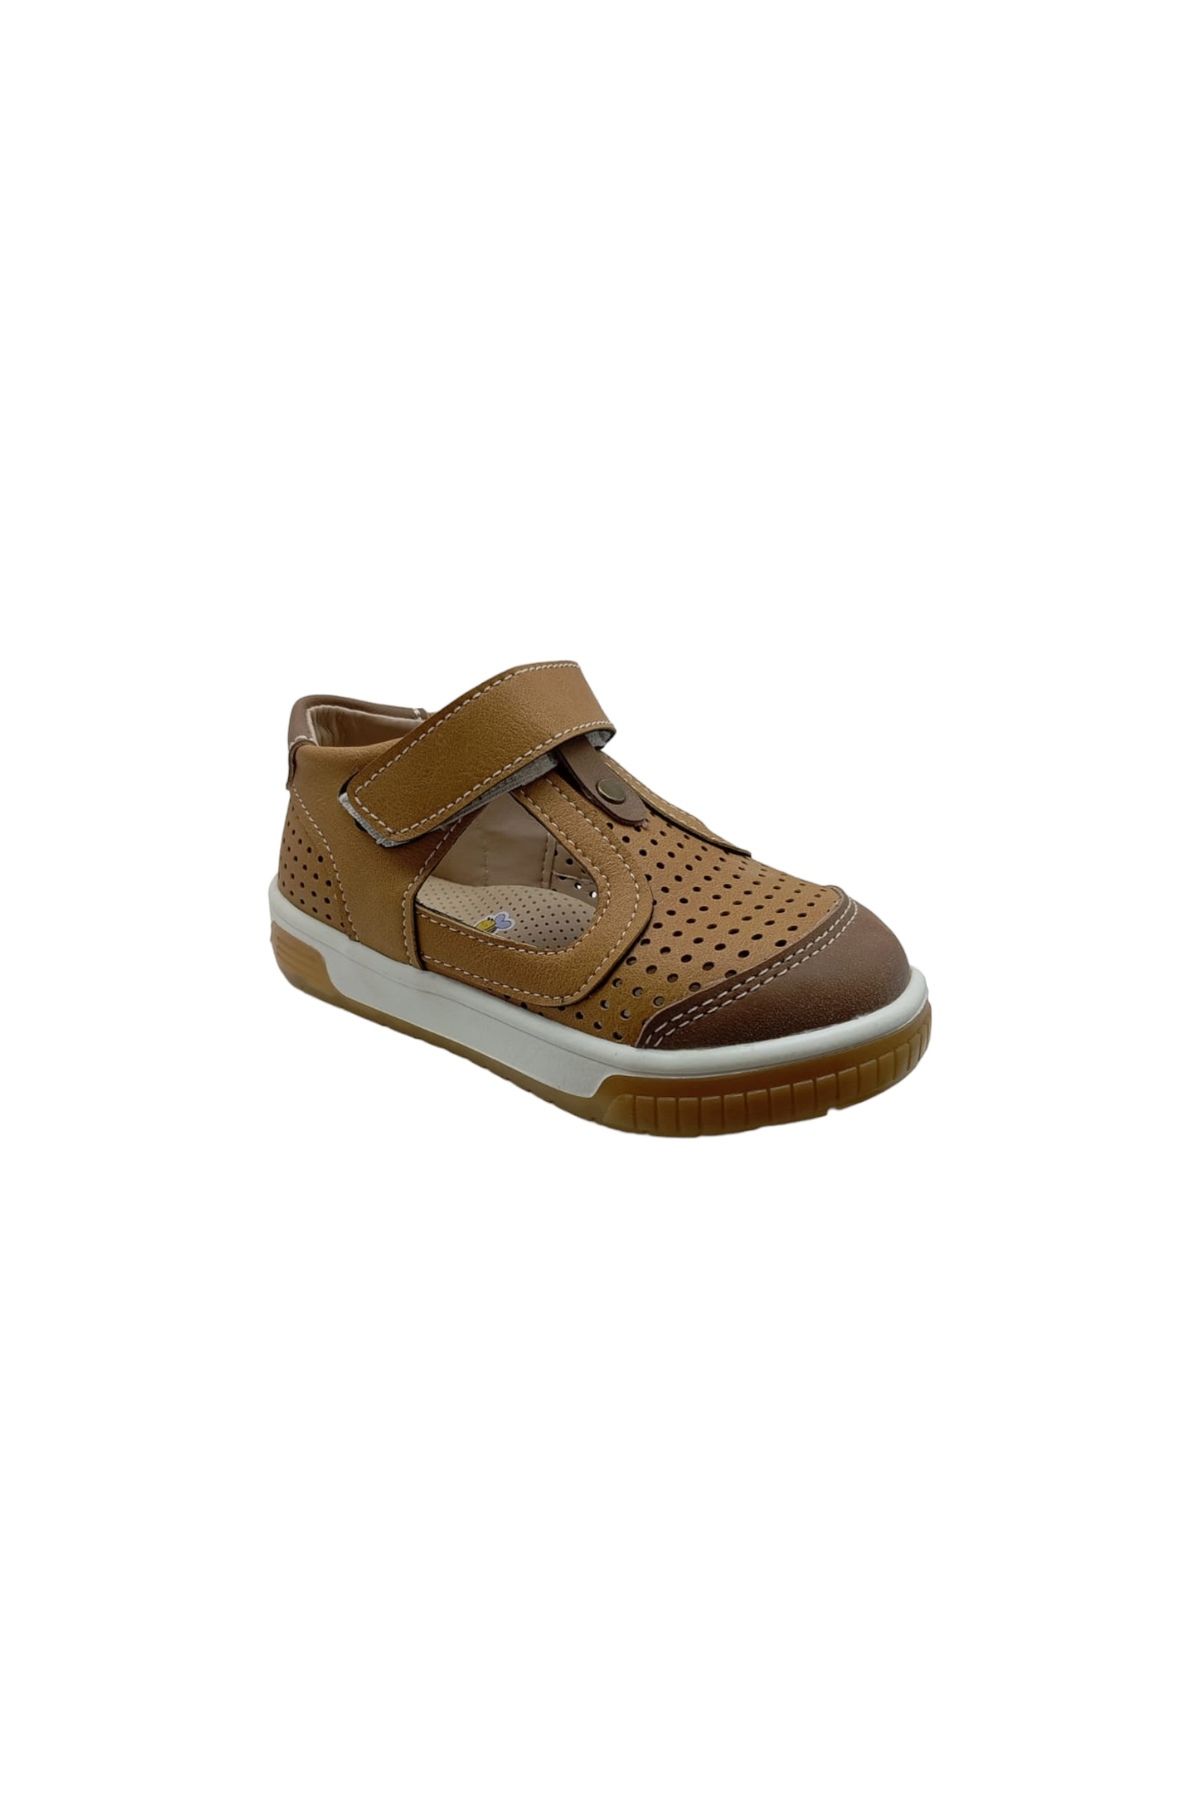 innsteal Kahverengi- Ekru  Renk, Ortopedik, Erkek Çocuk Bantlı (Cırtlı)  Yazlık Ayakkabı